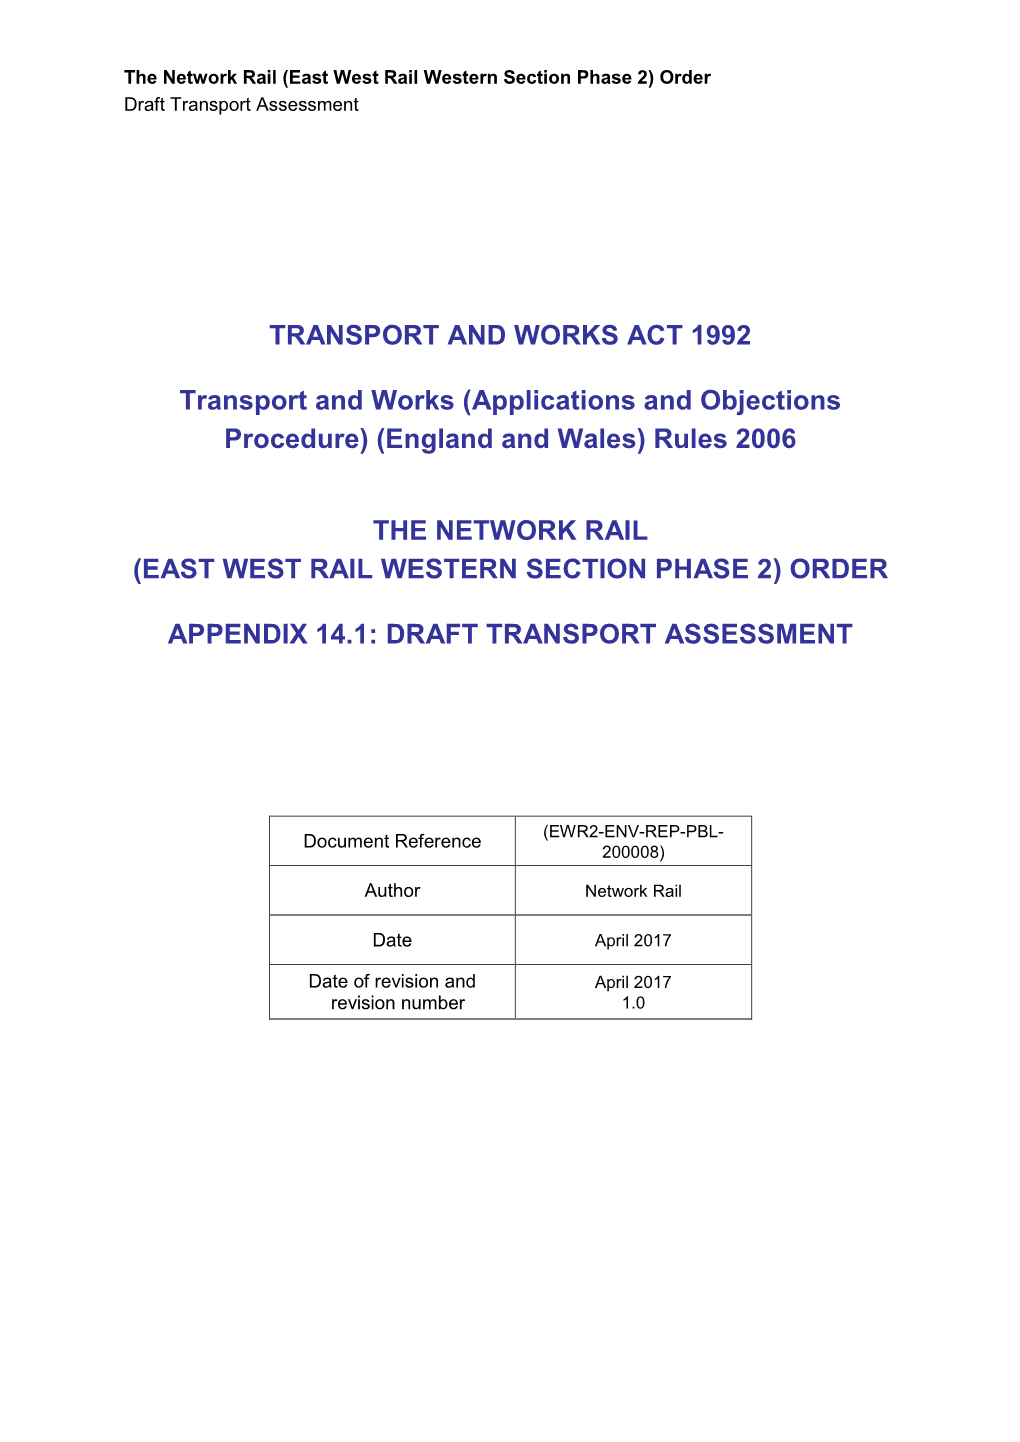 Draft Transport Assessment